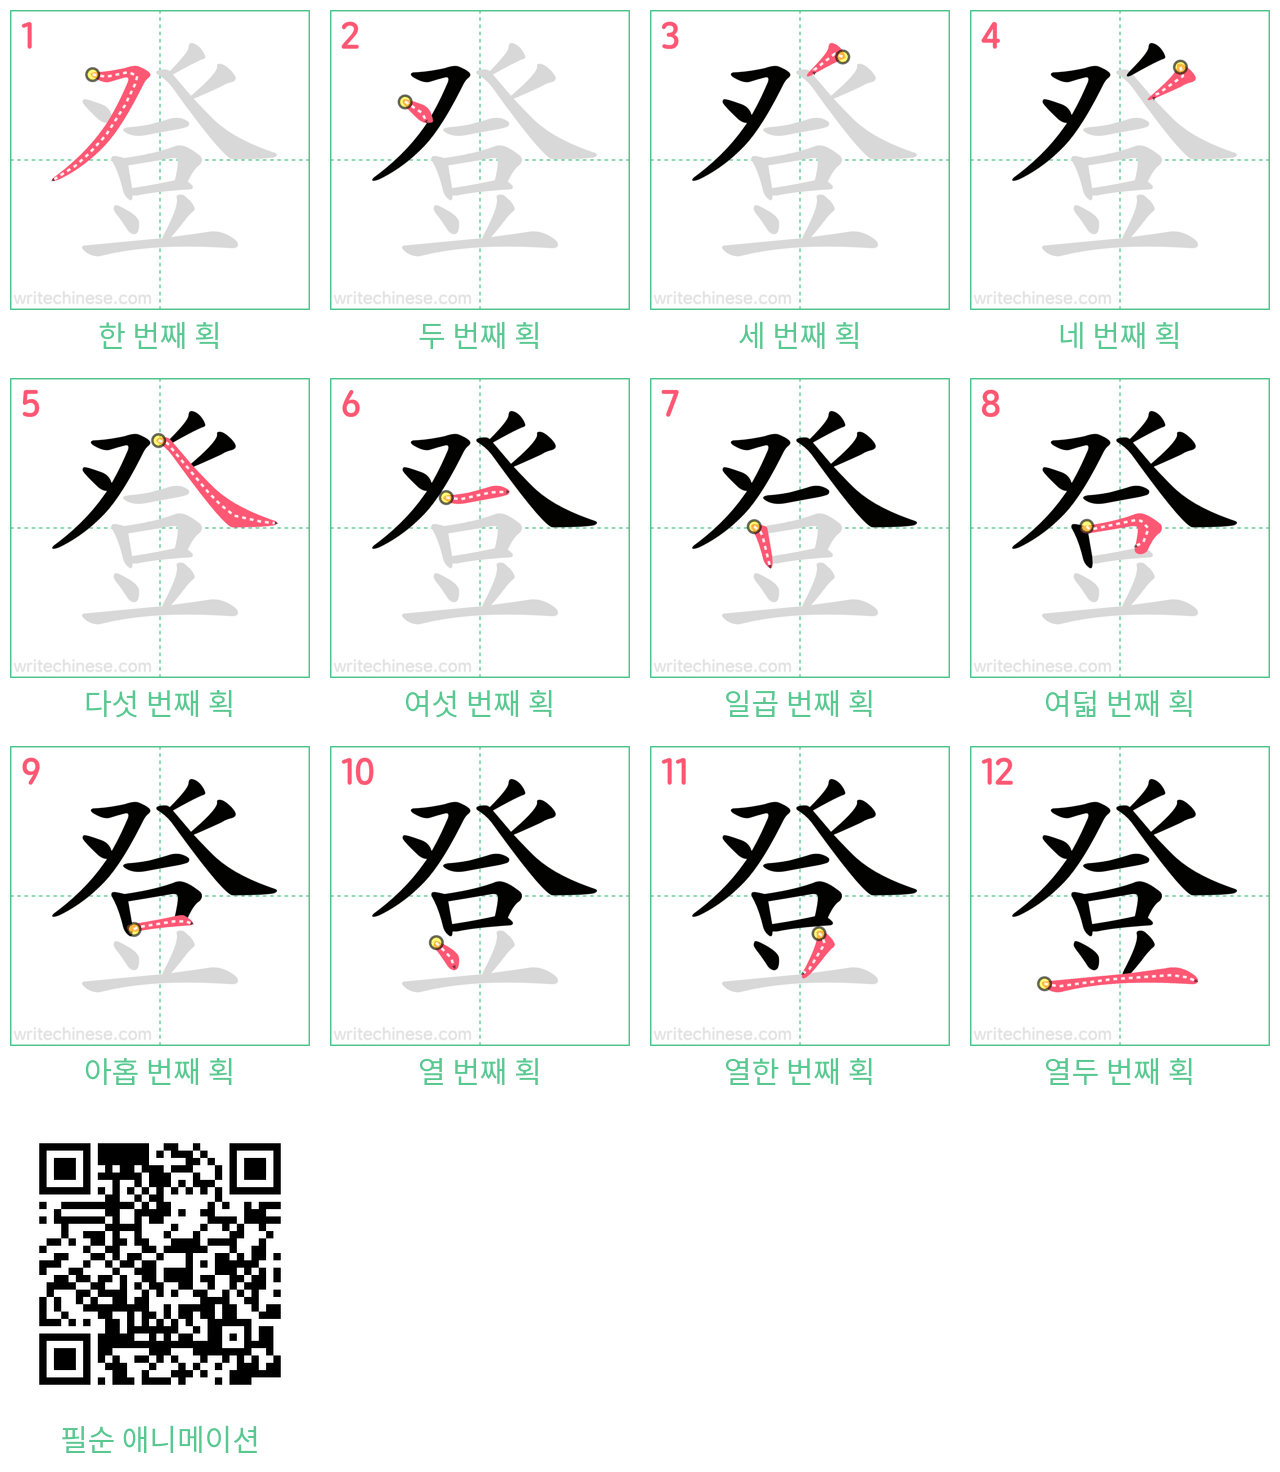 登 step-by-step stroke order diagrams